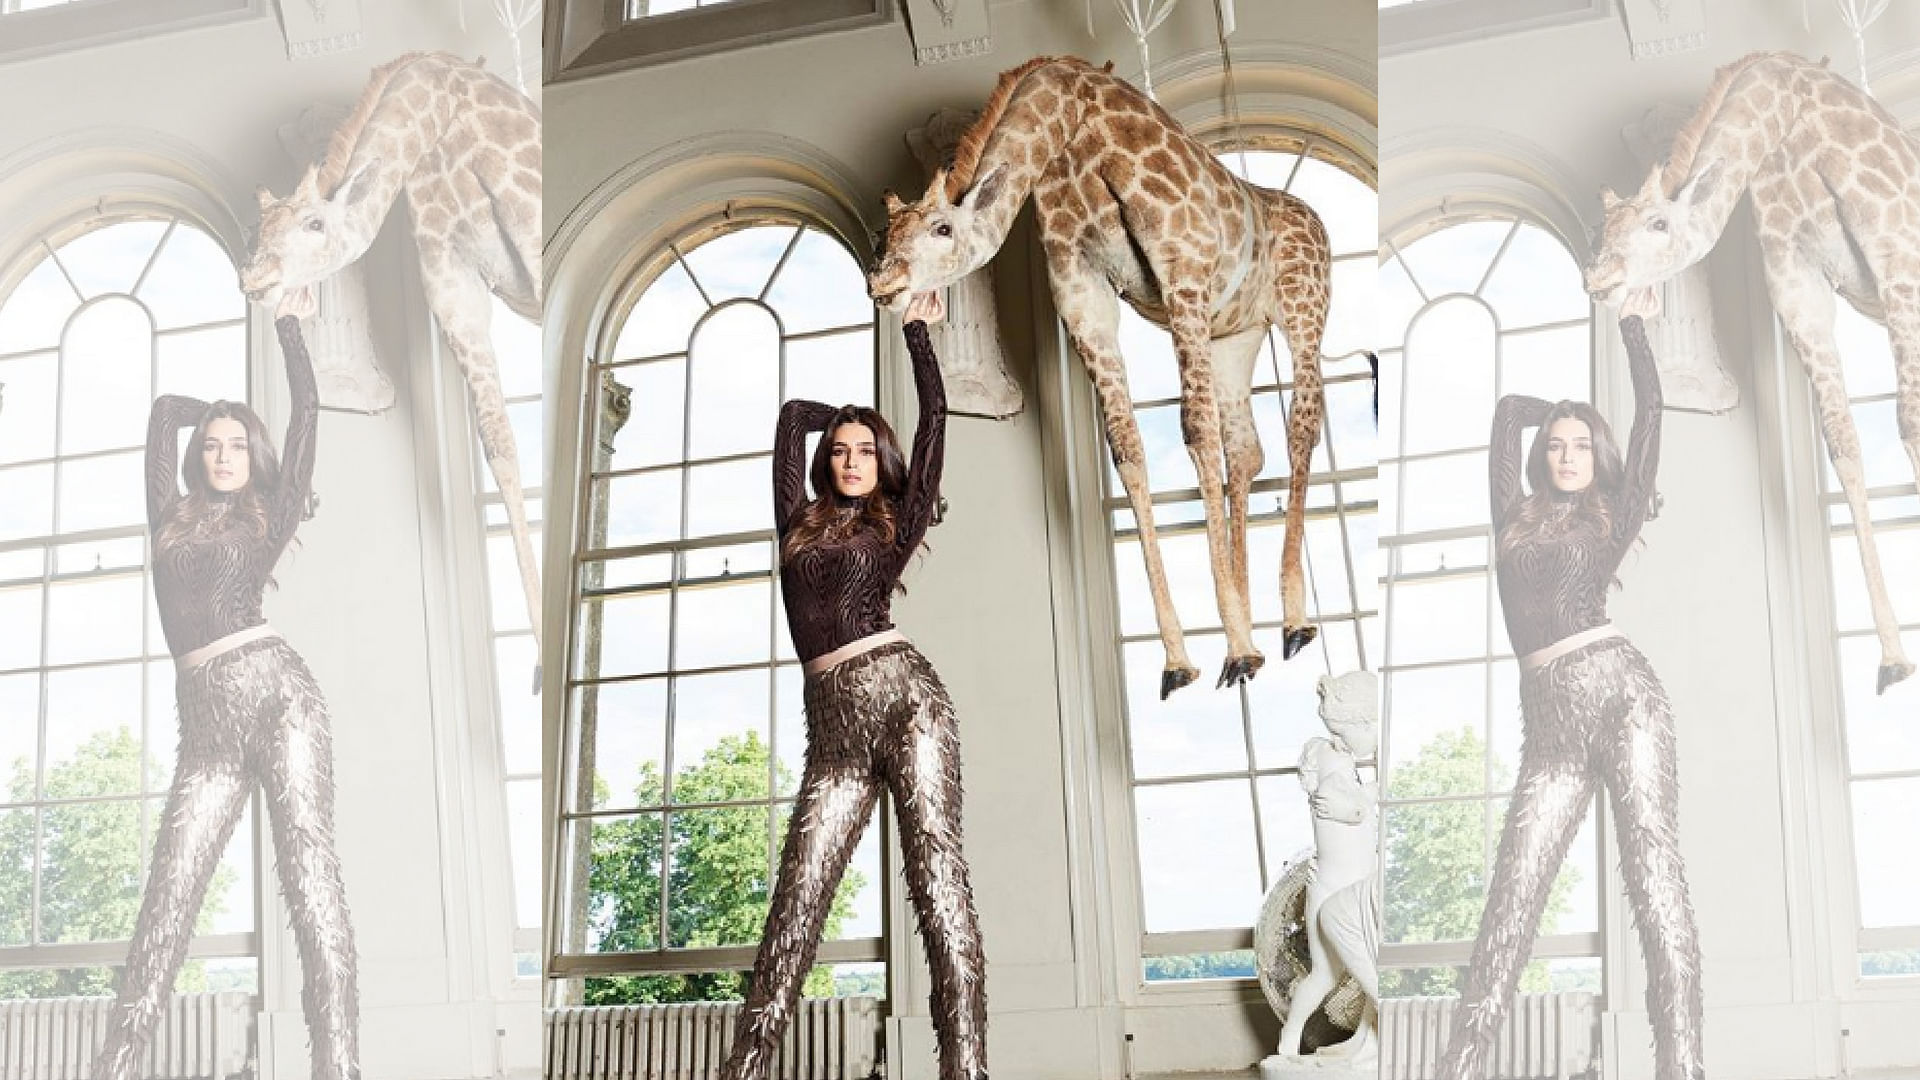 Kriti Sanon’s giraffe photo for <i>Cosmopolitan India</i> magazine sparks controversy online.